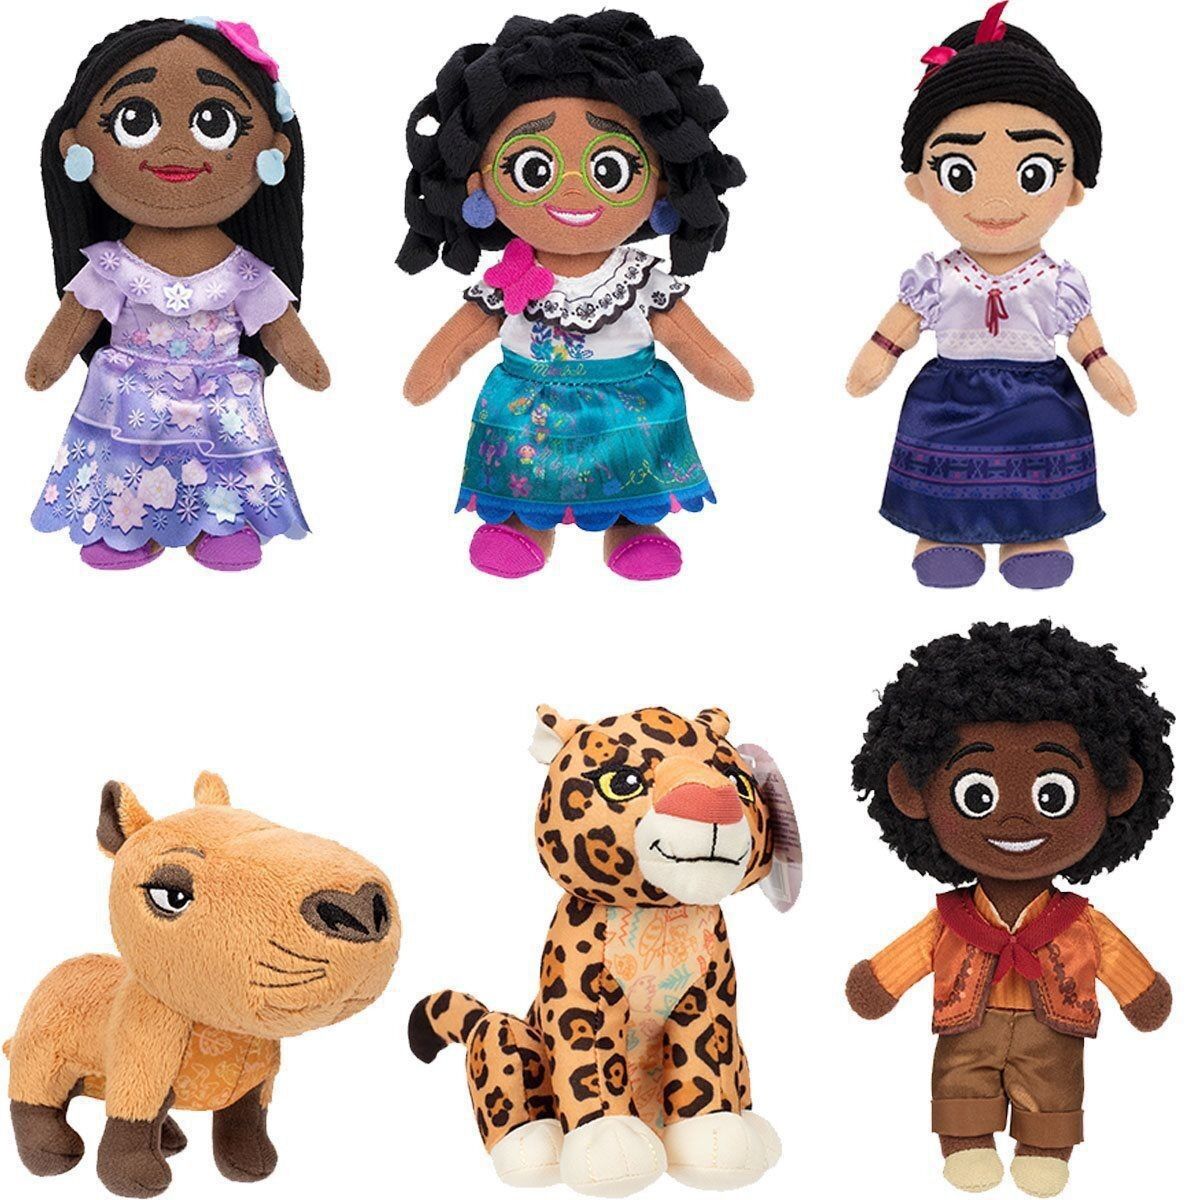 Peluche de algodón suave de personajes de Disney para niños, juguete de felpa de Encanto, Antonio, Mirabel, Juliana, Luisa, Chispi, Jaguar